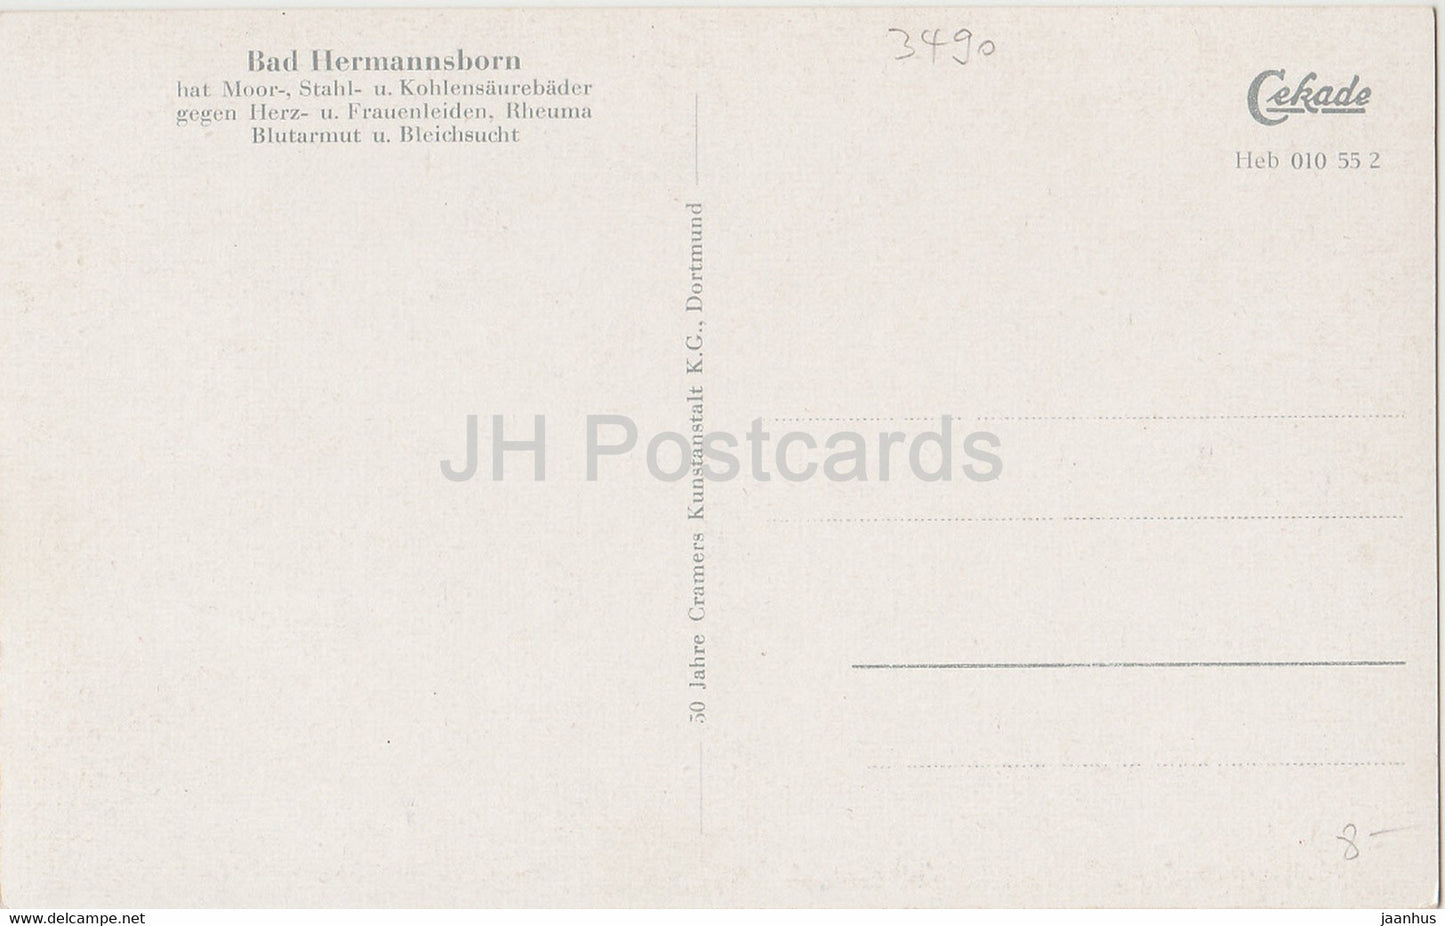 Bad Hermannsborn - Partie am Schwanenteich - carte postale ancienne - 1957 - Allemagne - inutilisée